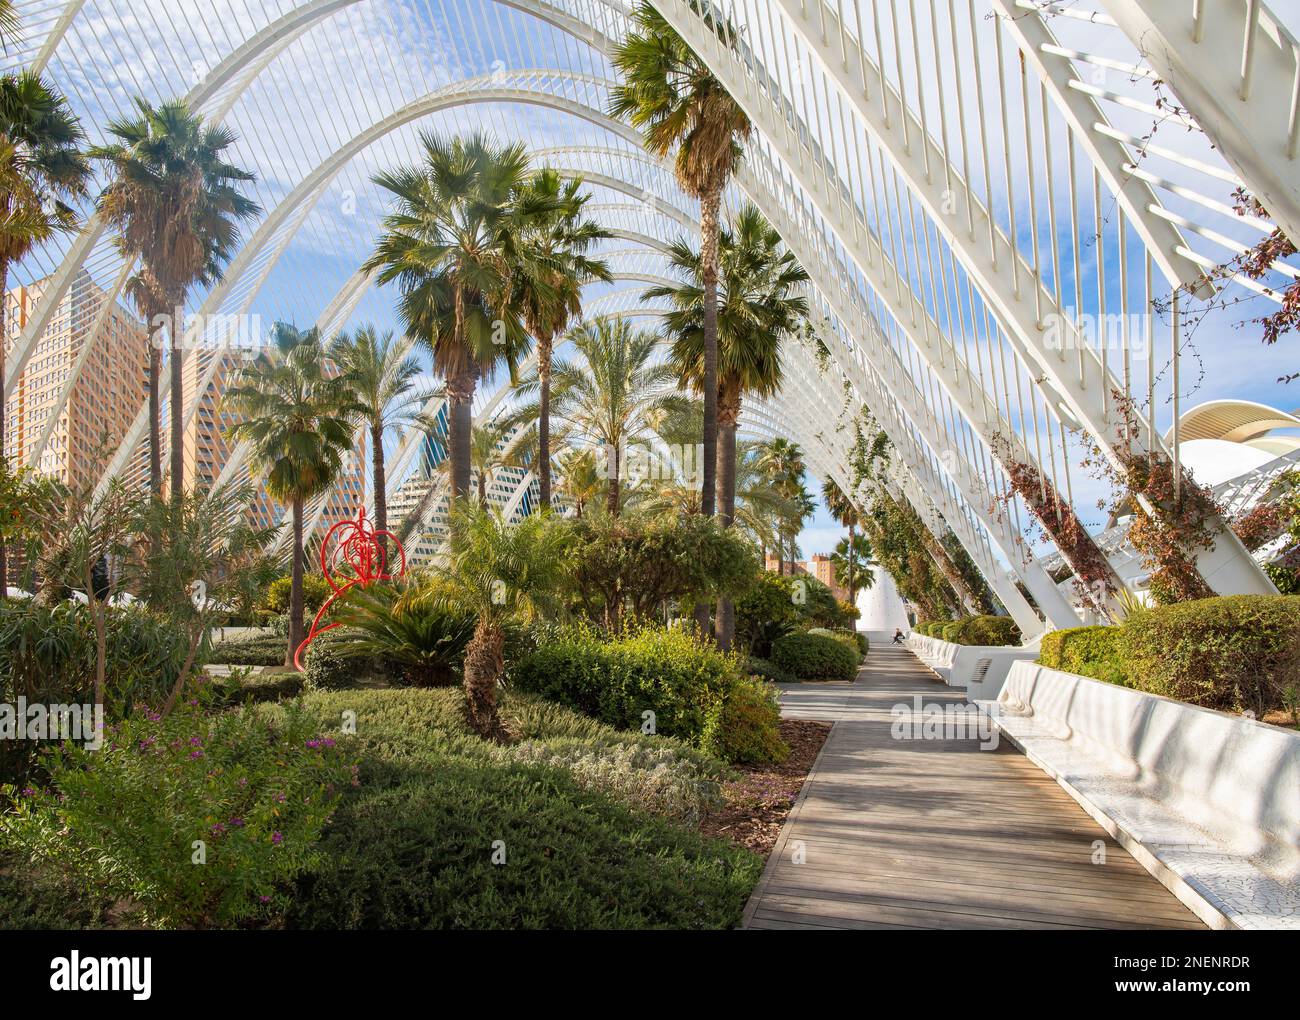 VALENCE, ESPAGNE - 15 FÉVRIER 2022 : le jardin de sculptures de l'Umbracle fait partie de la Cité des Arts conçue par Santiago Calatrava. Banque D'Images